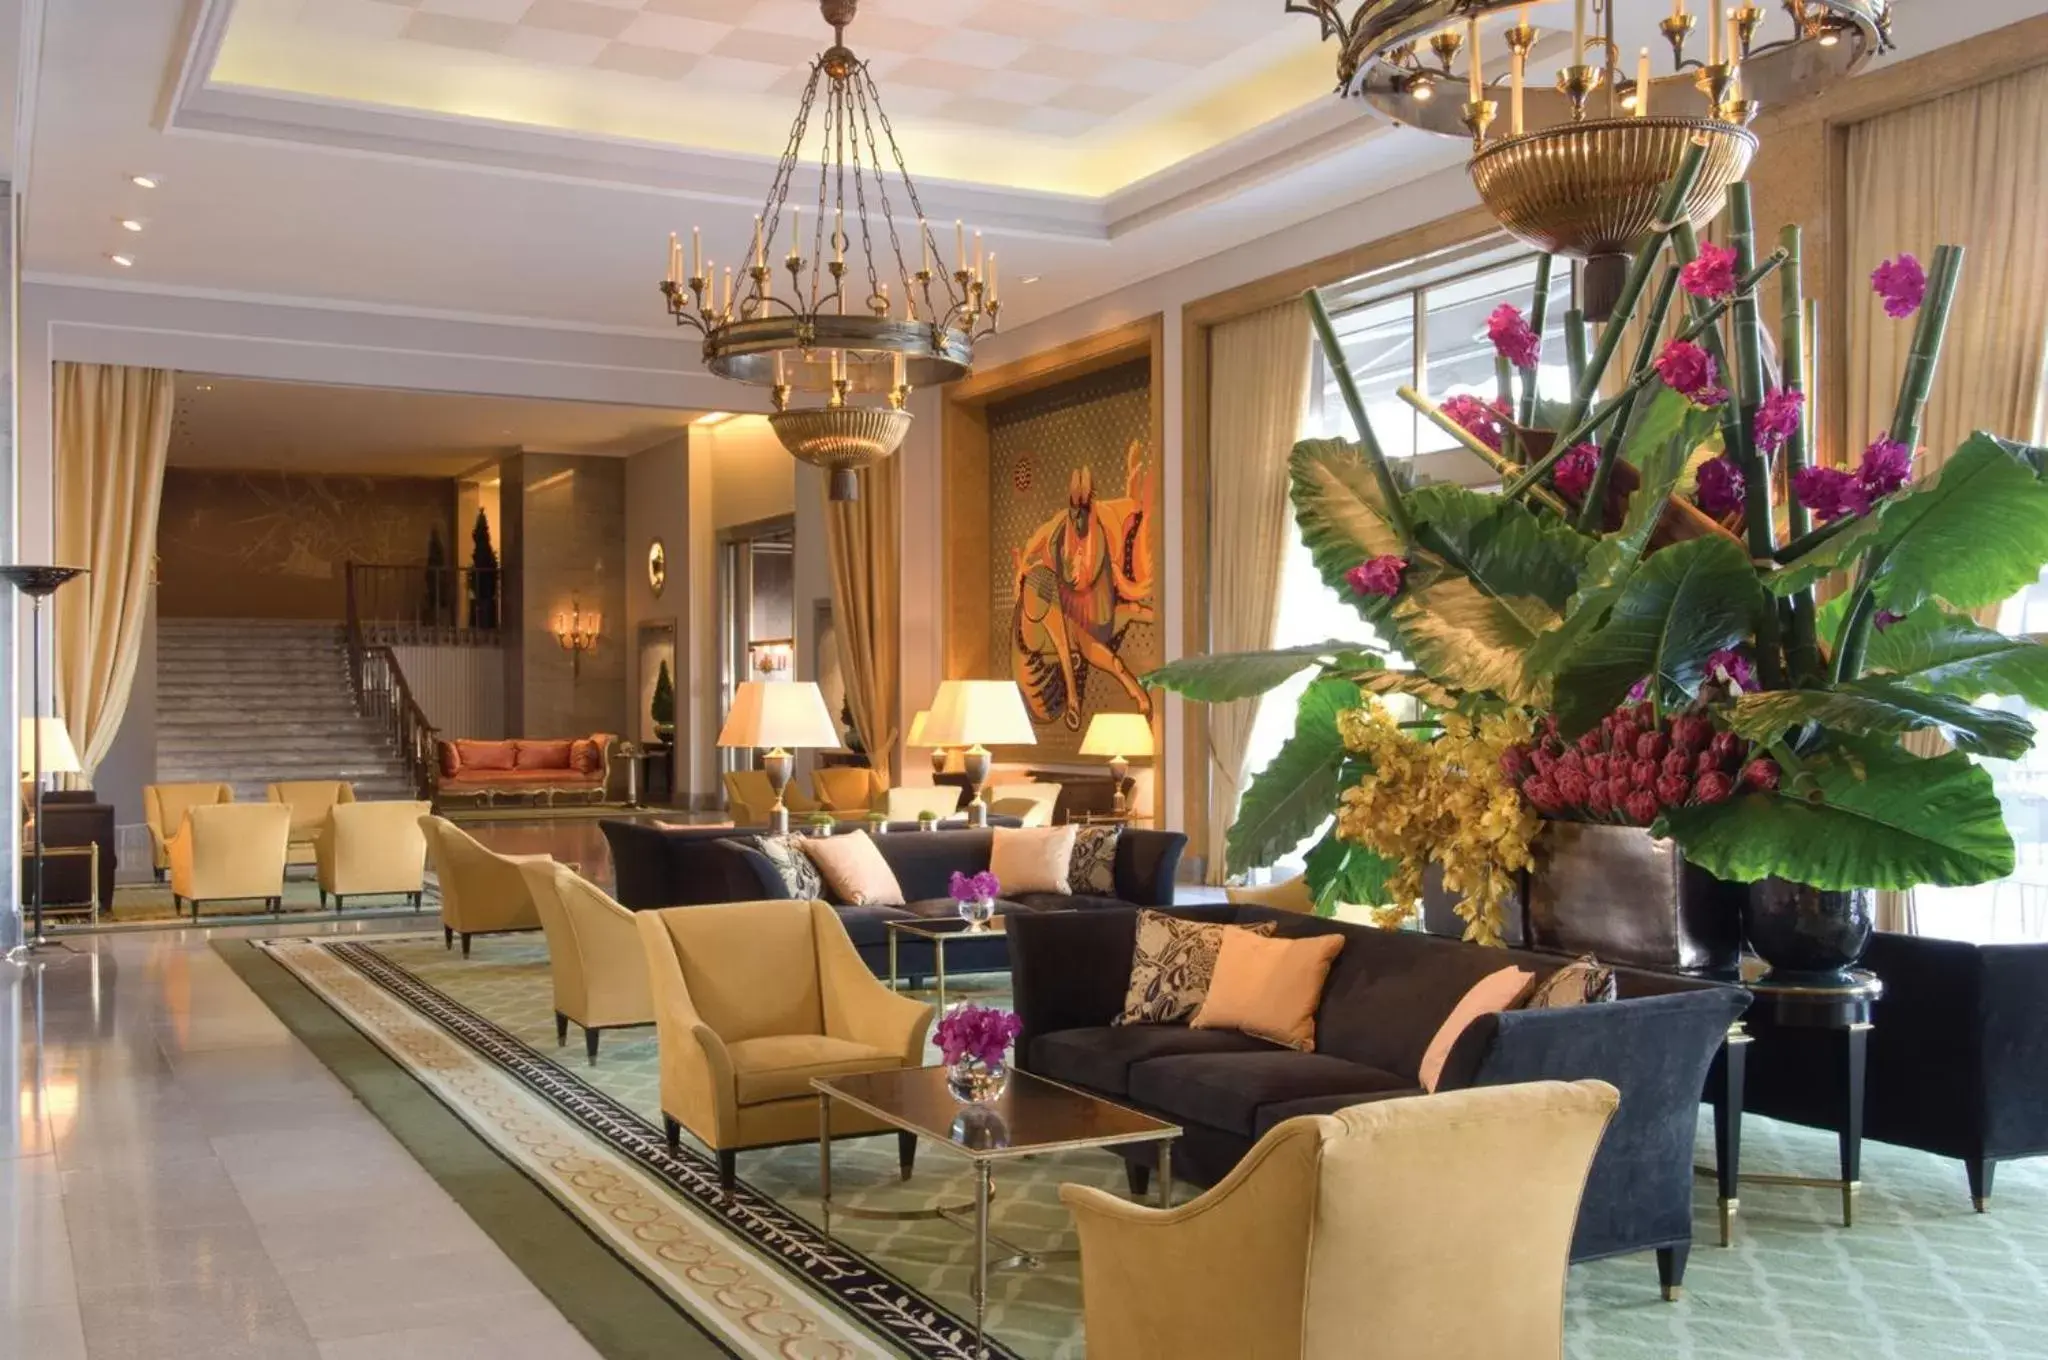 Lobby or reception, Lobby/Reception in Four Seasons Hotel Ritz Lisbon